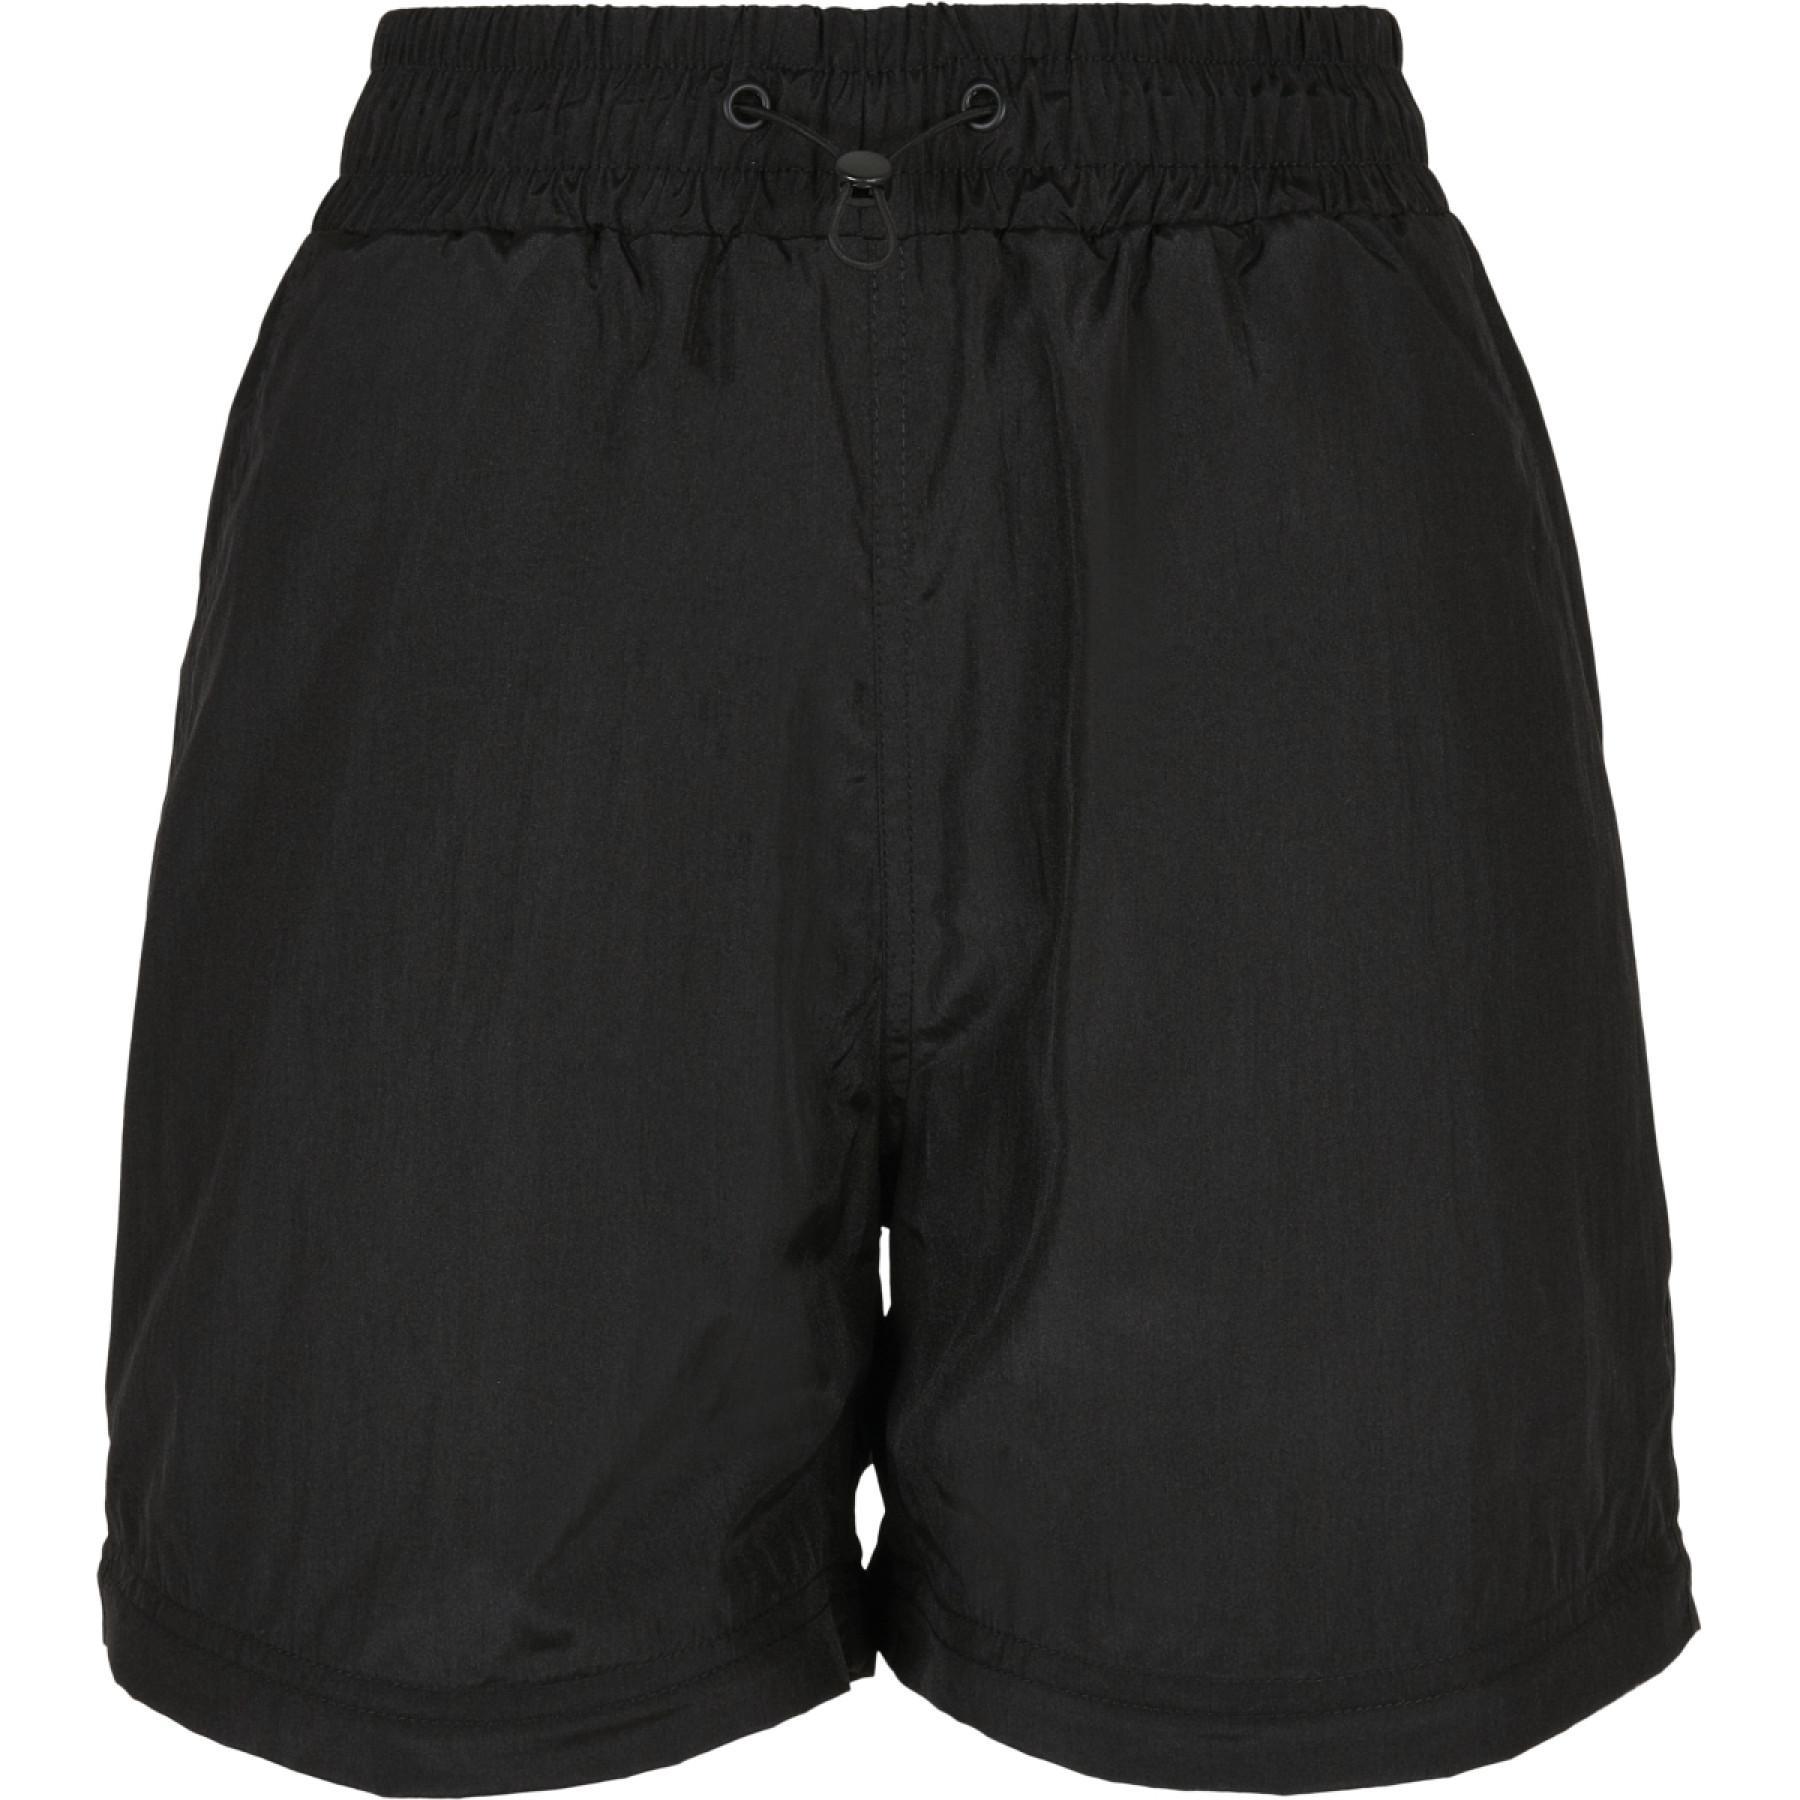 Pantalon femme Urban Classics shiny crinkle nylon zip-grandes tailles